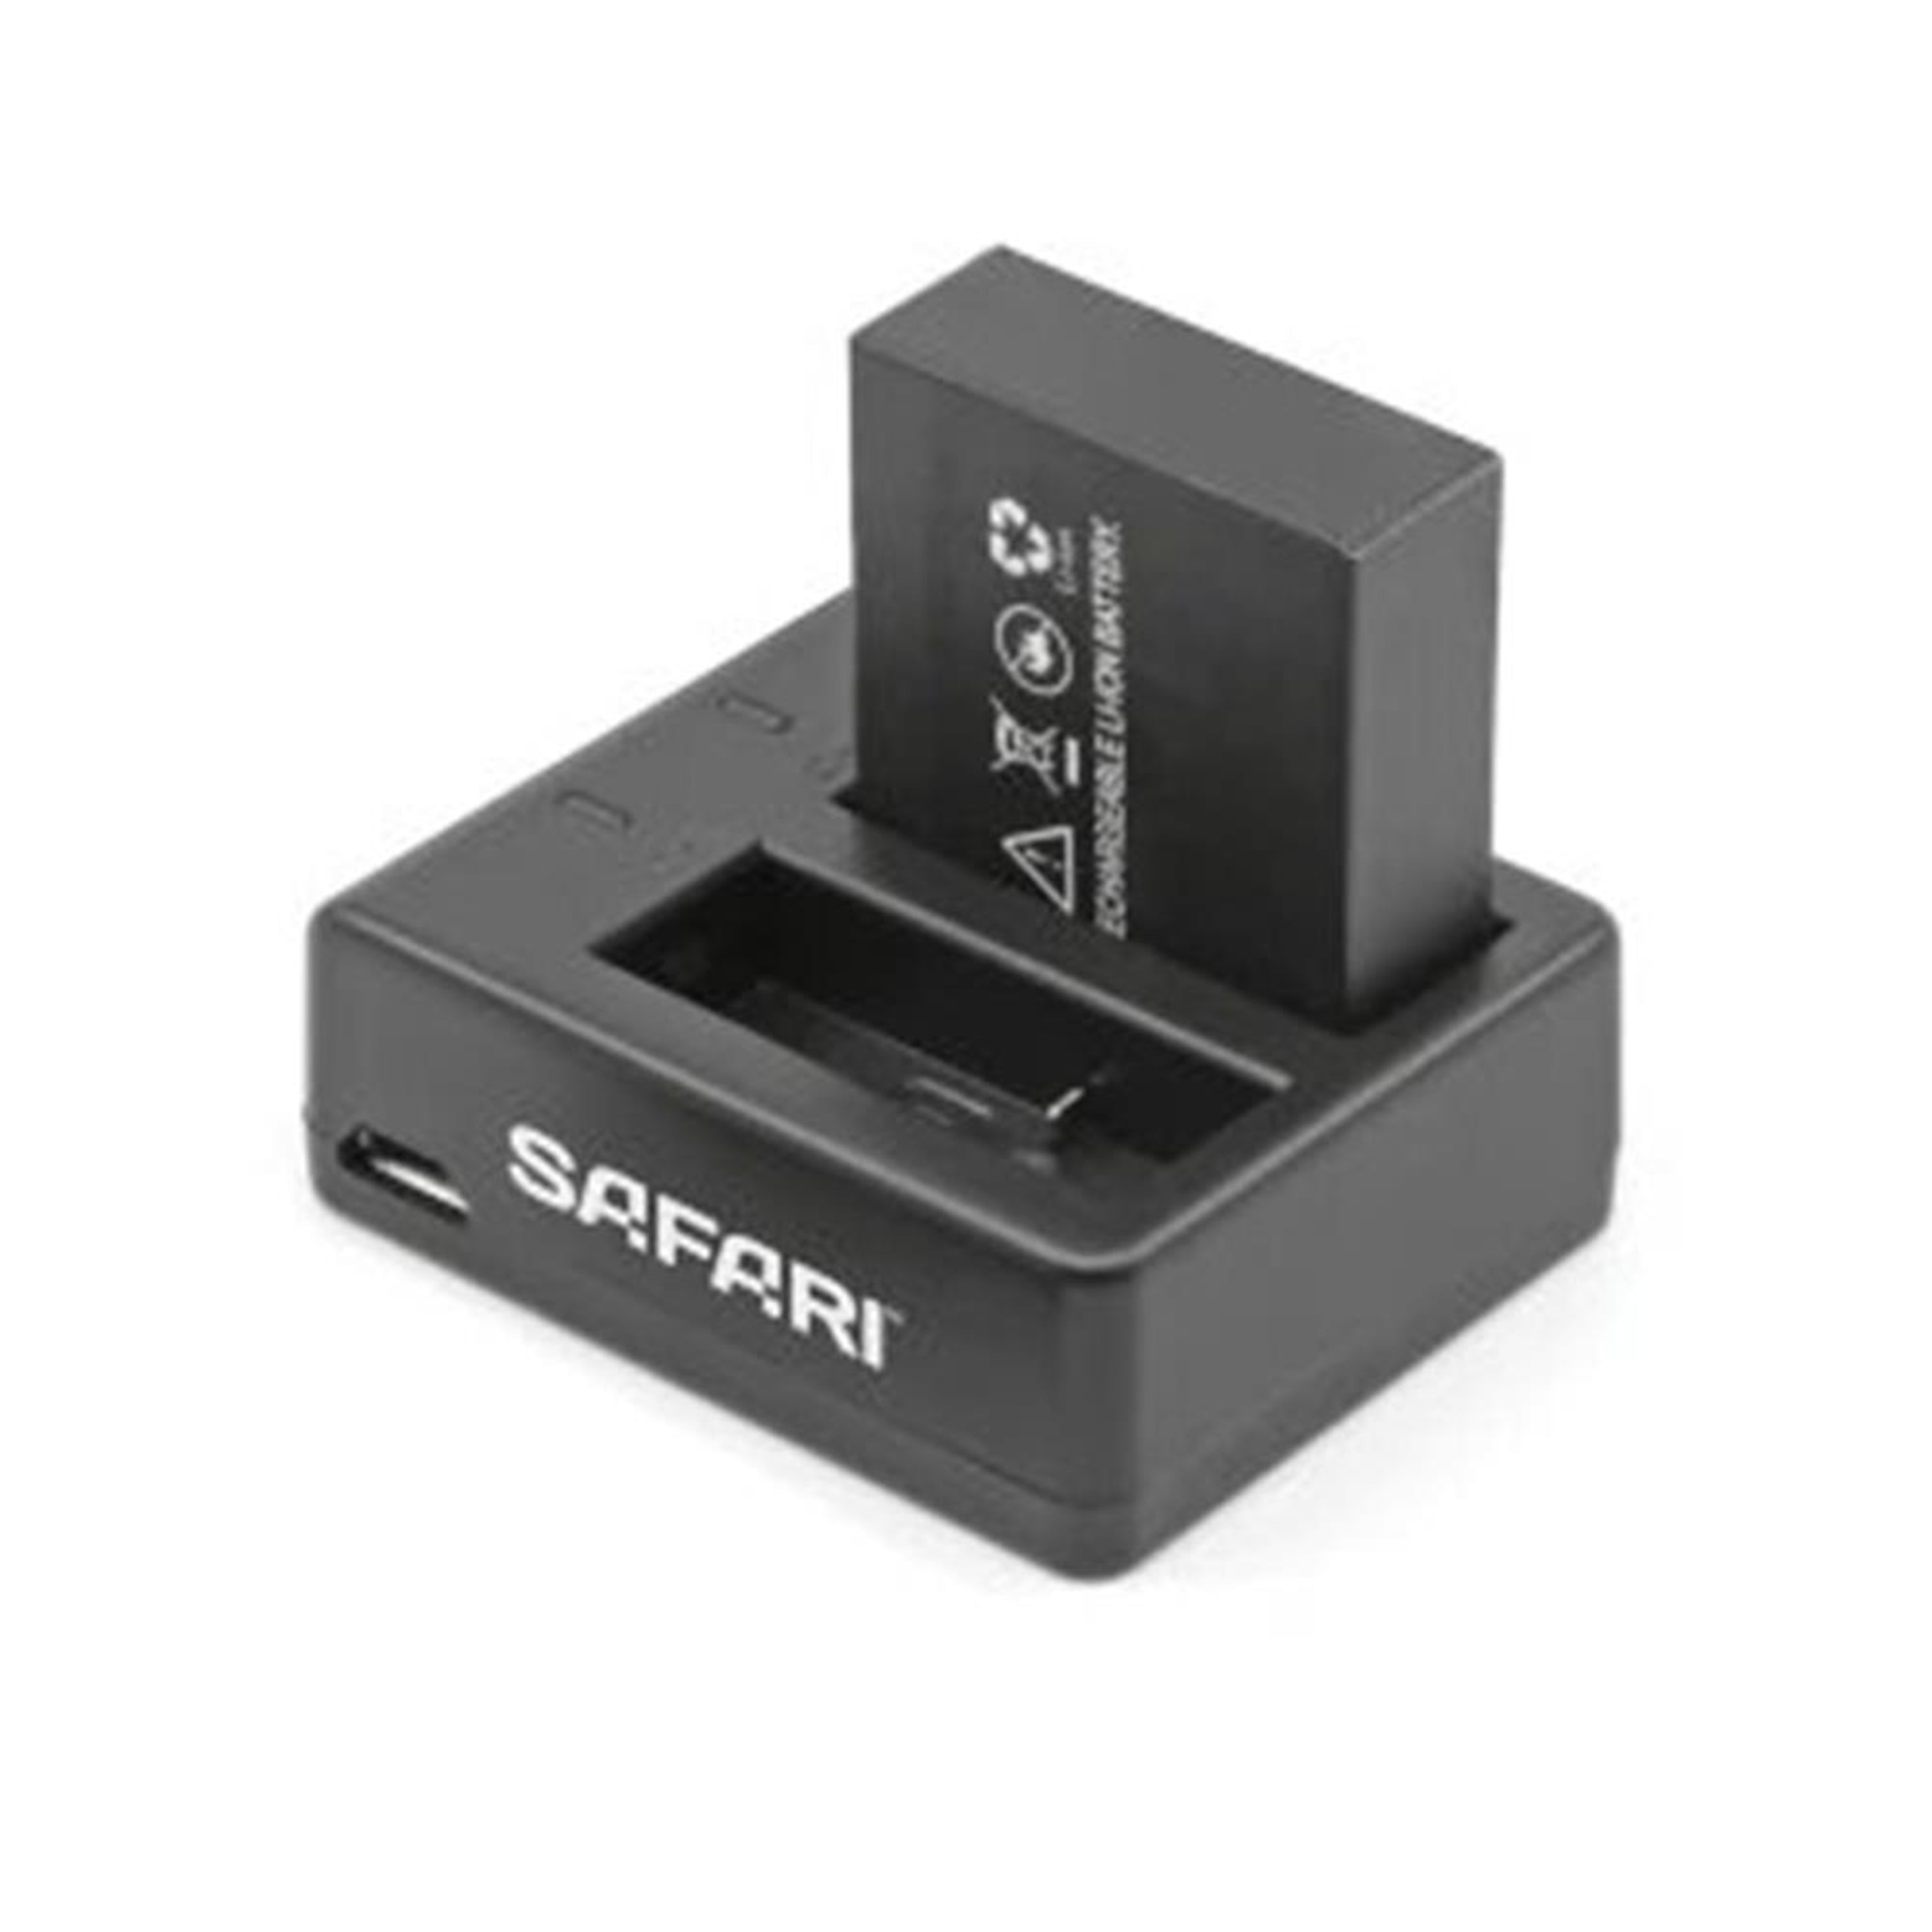 Safari Dual Battery Charger For SAFARIBP